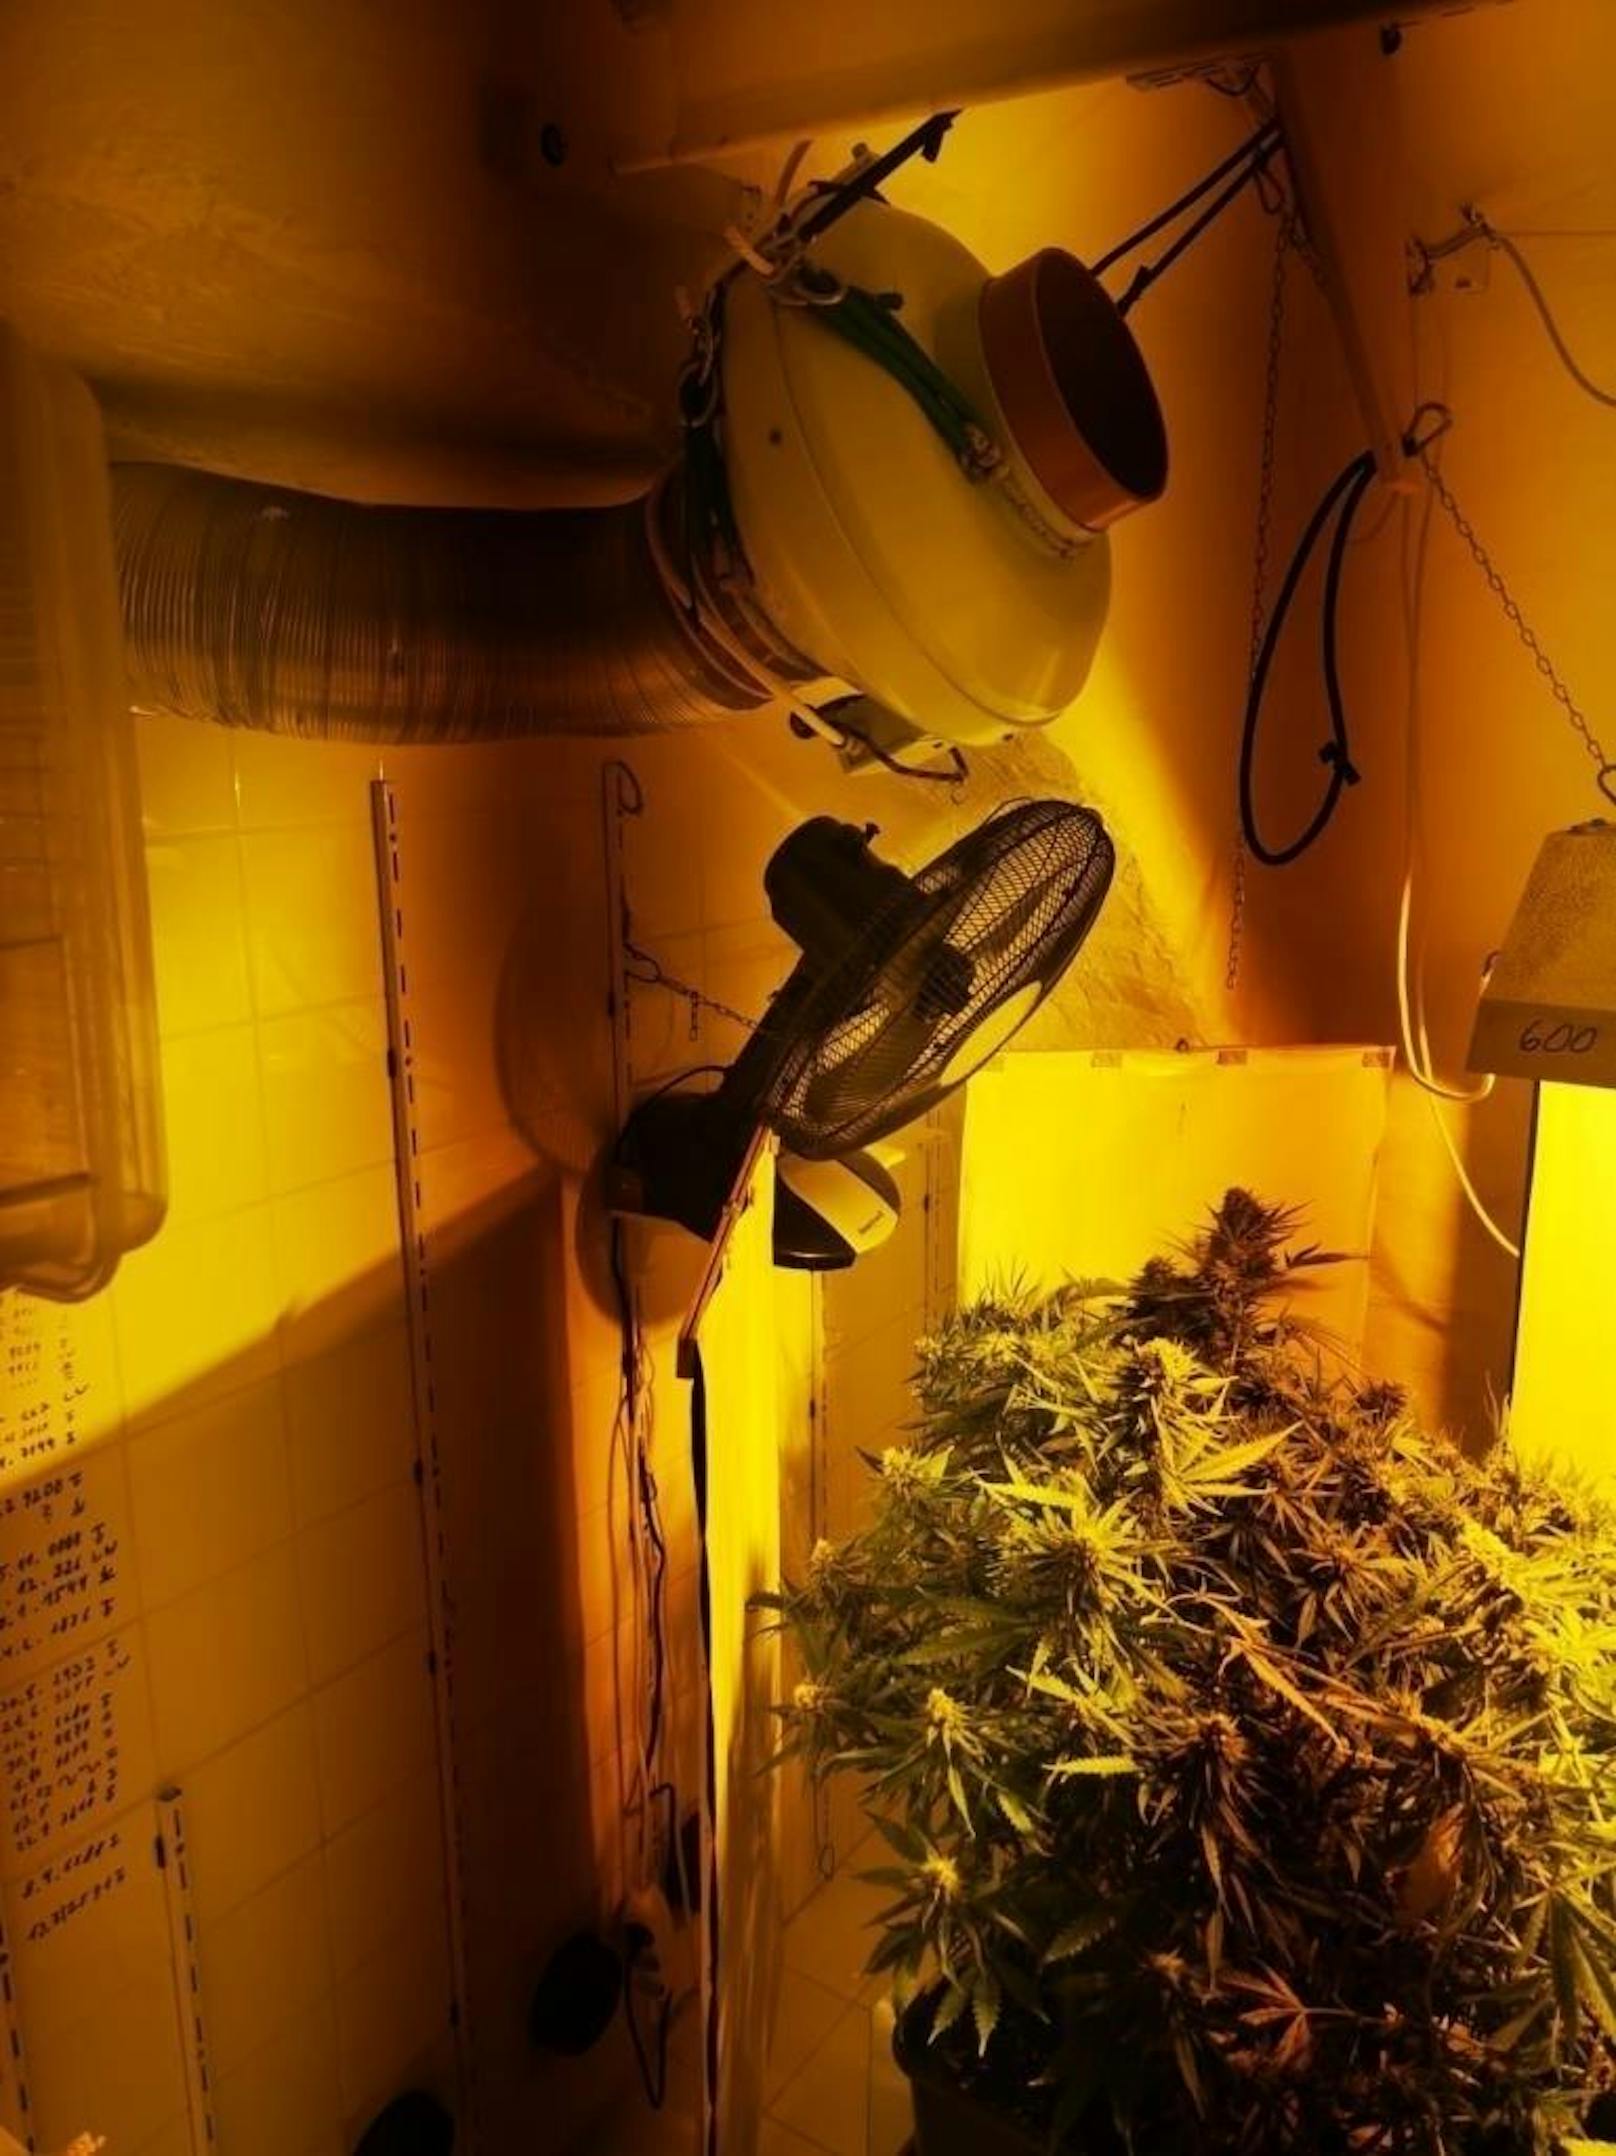 Polizisten der Polizei-Inspektion Donaufelder Straße fanden die Hanf-Plantage in einem Wohnhaus in der Floridusgasse.